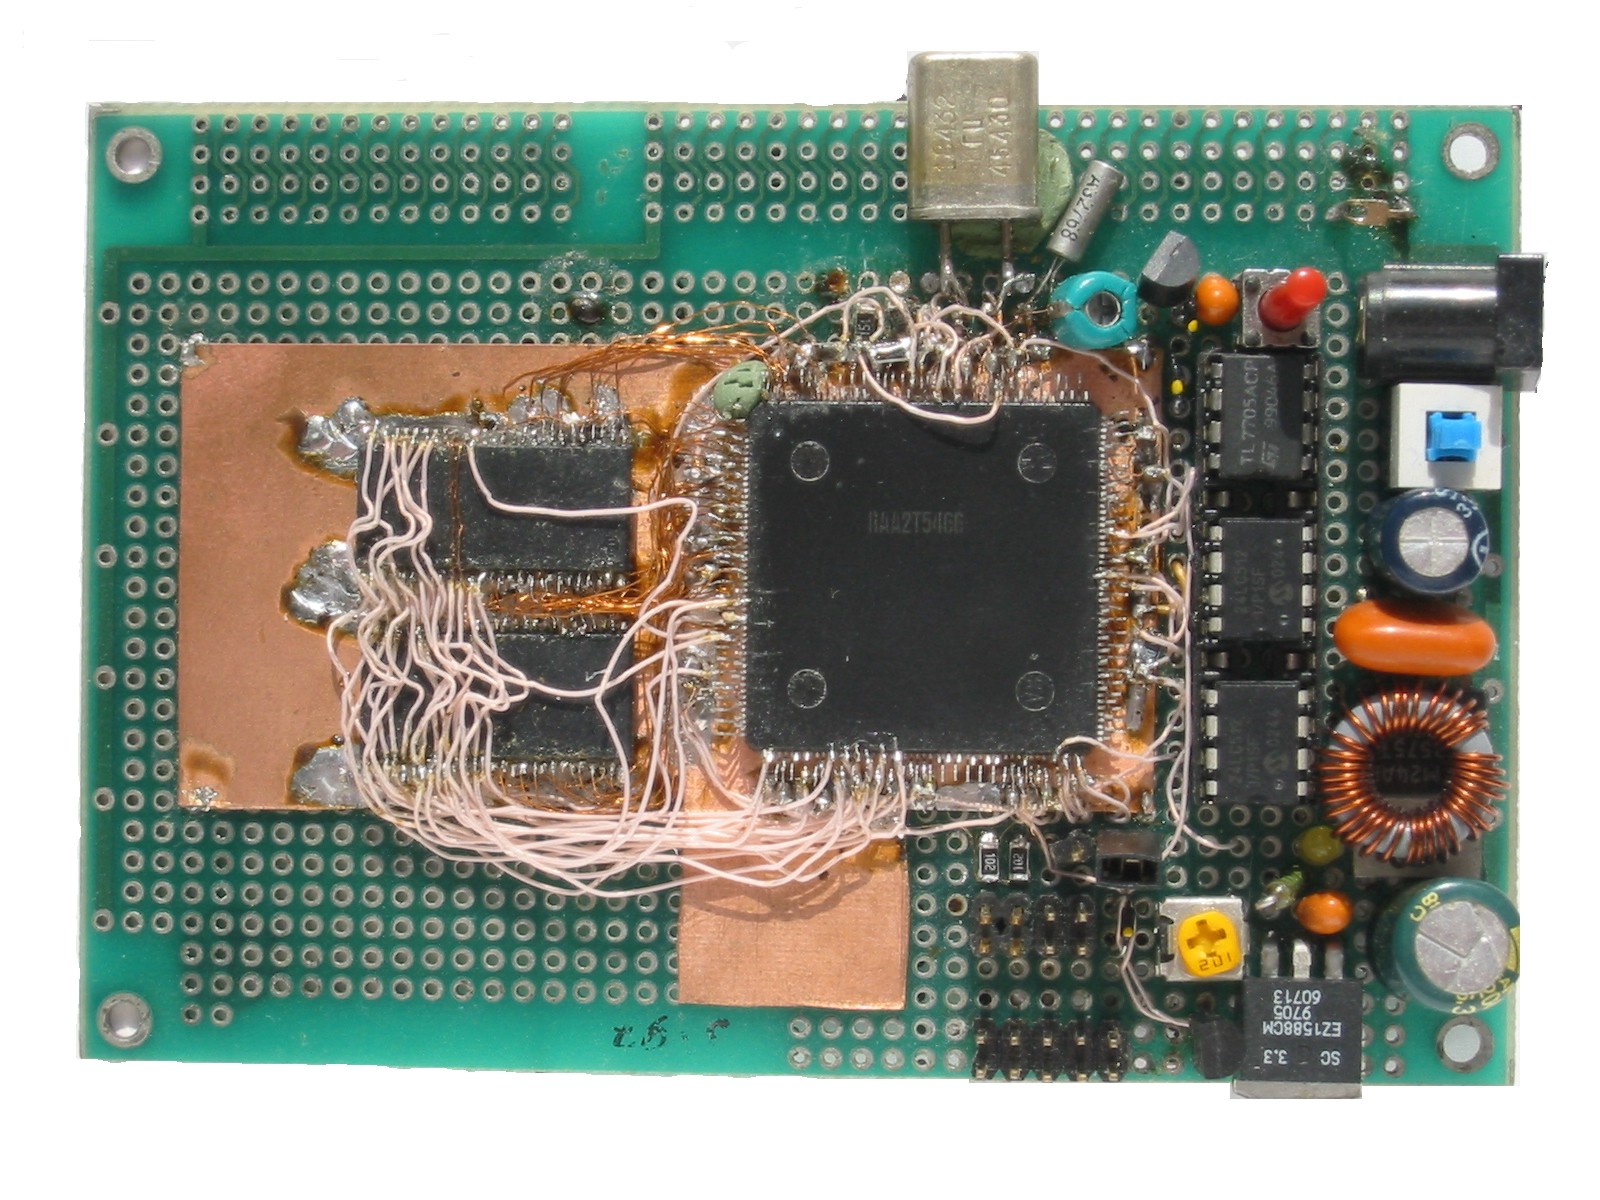 MIKROKONTROLER 8051 a prosty system sterujący. - elektroda.pl